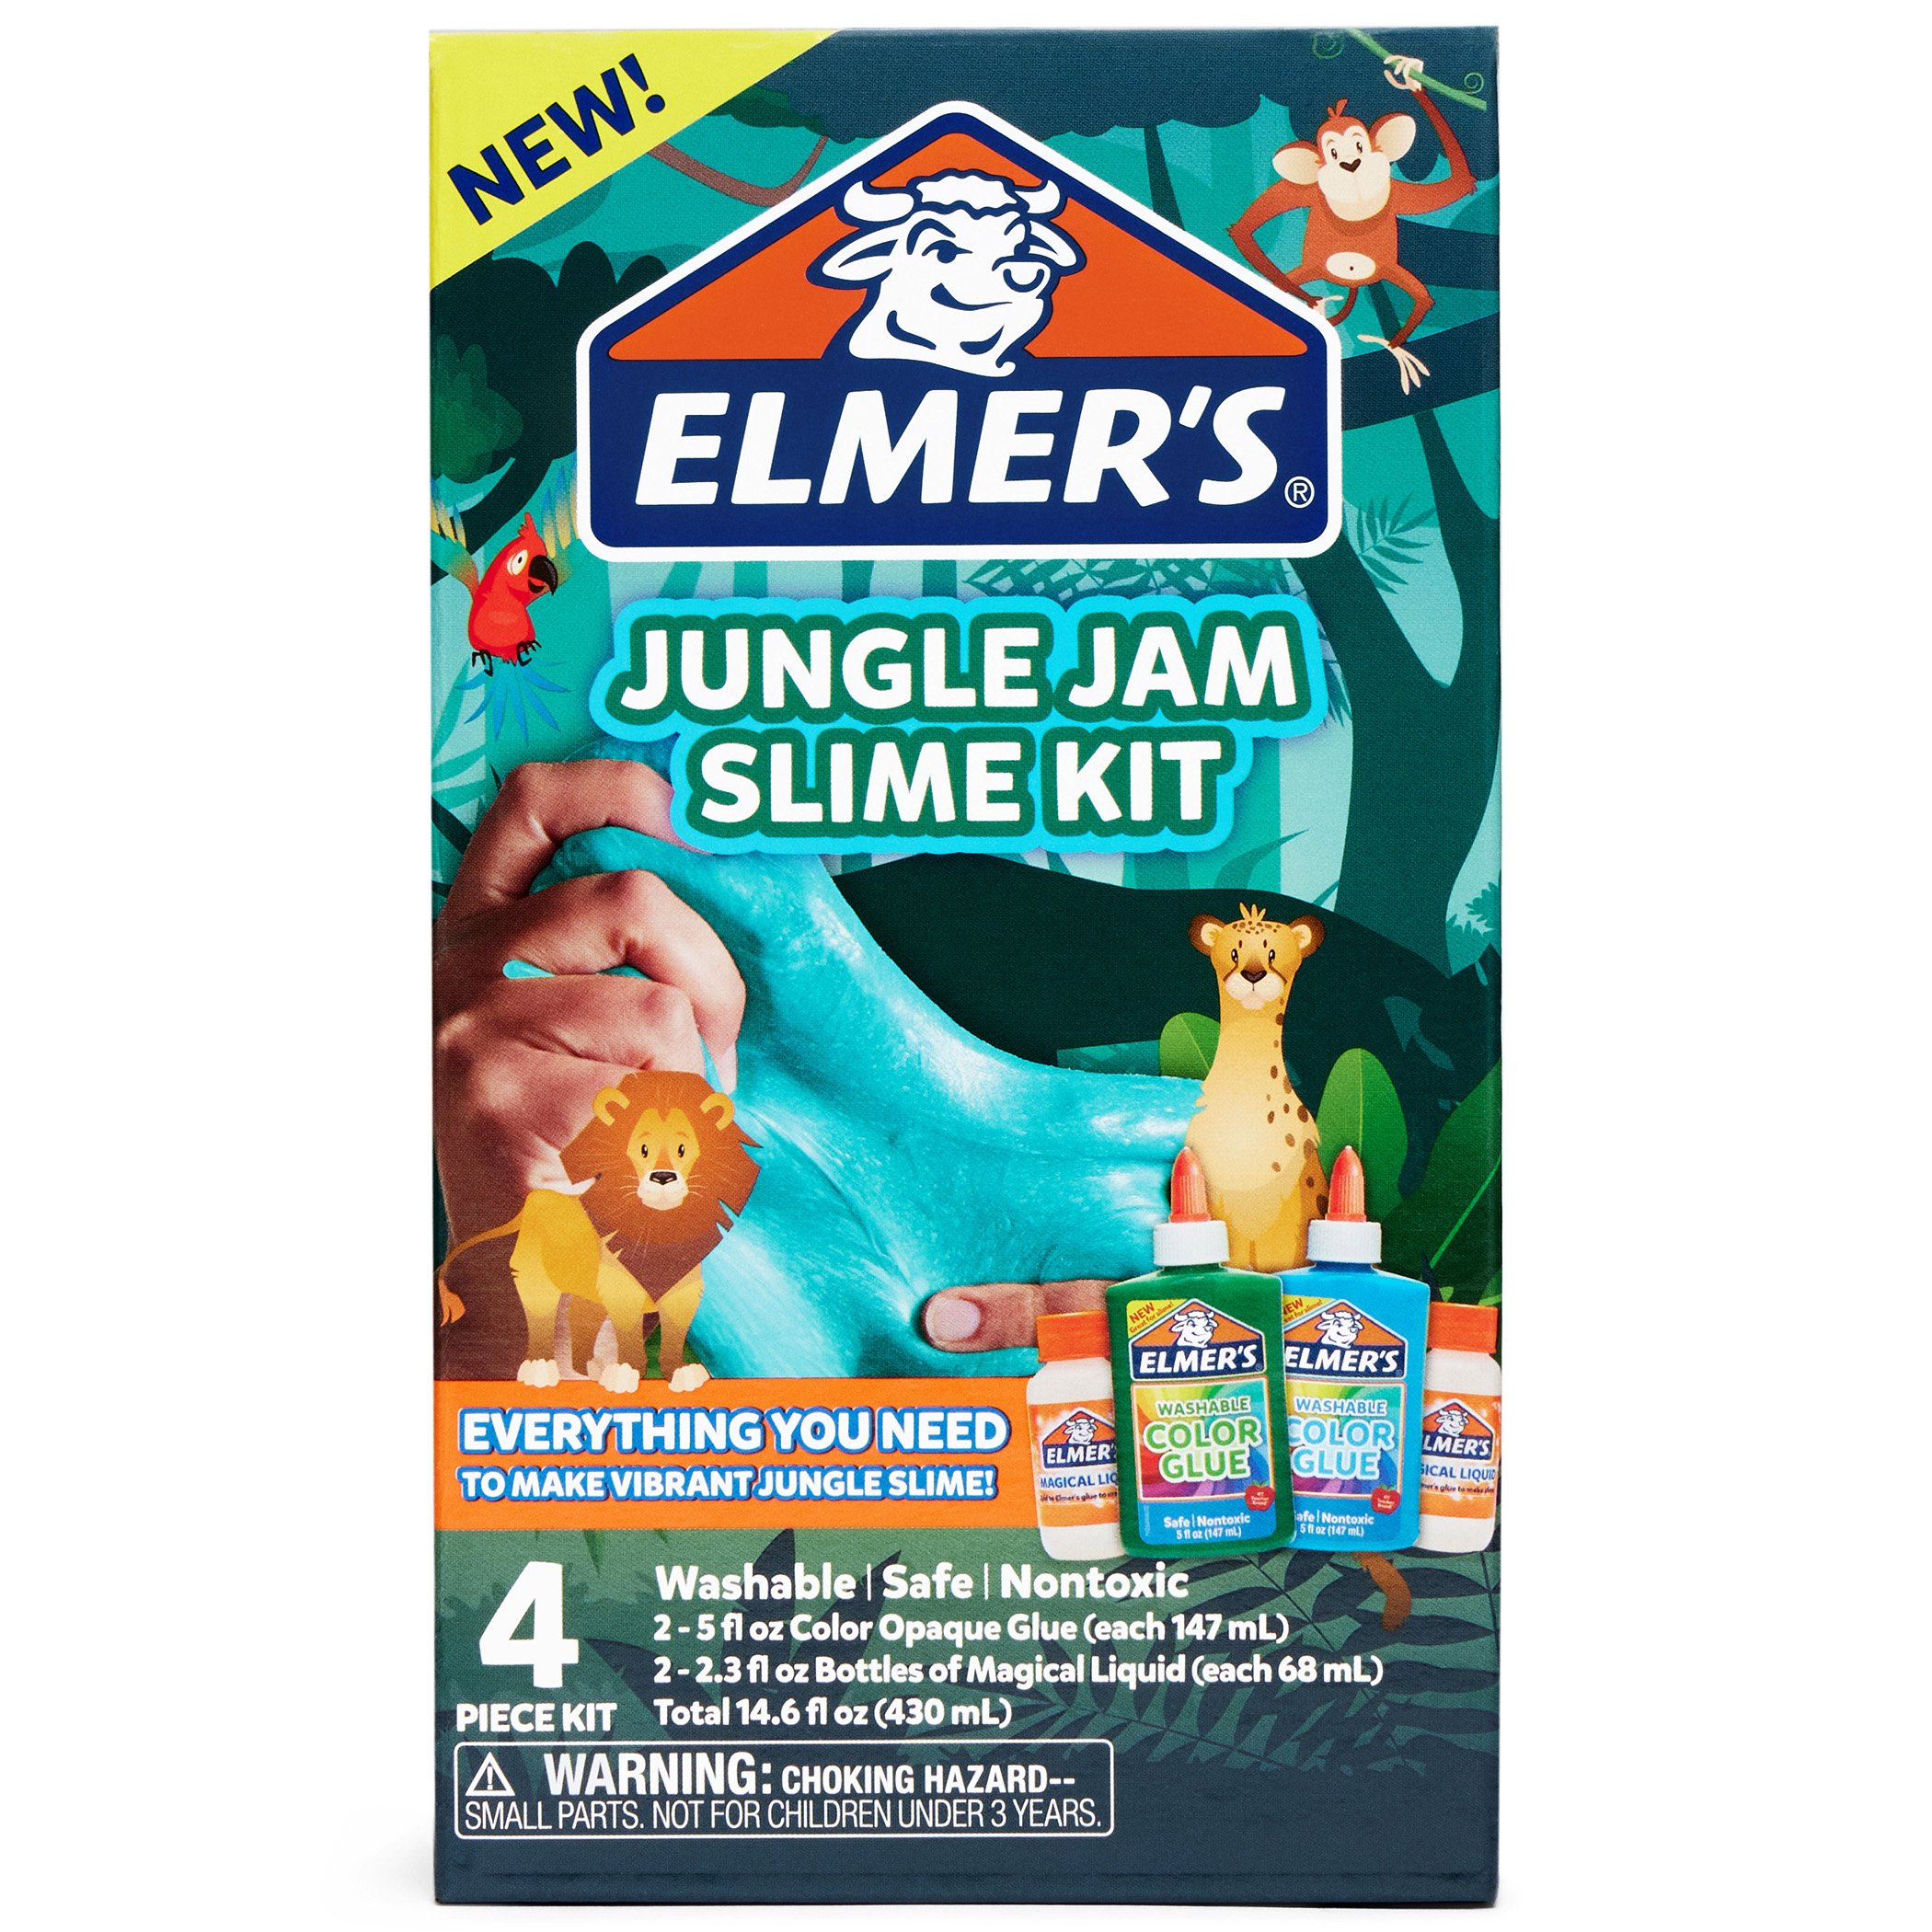 Elmer's All - in - One Slime Kit - Butter